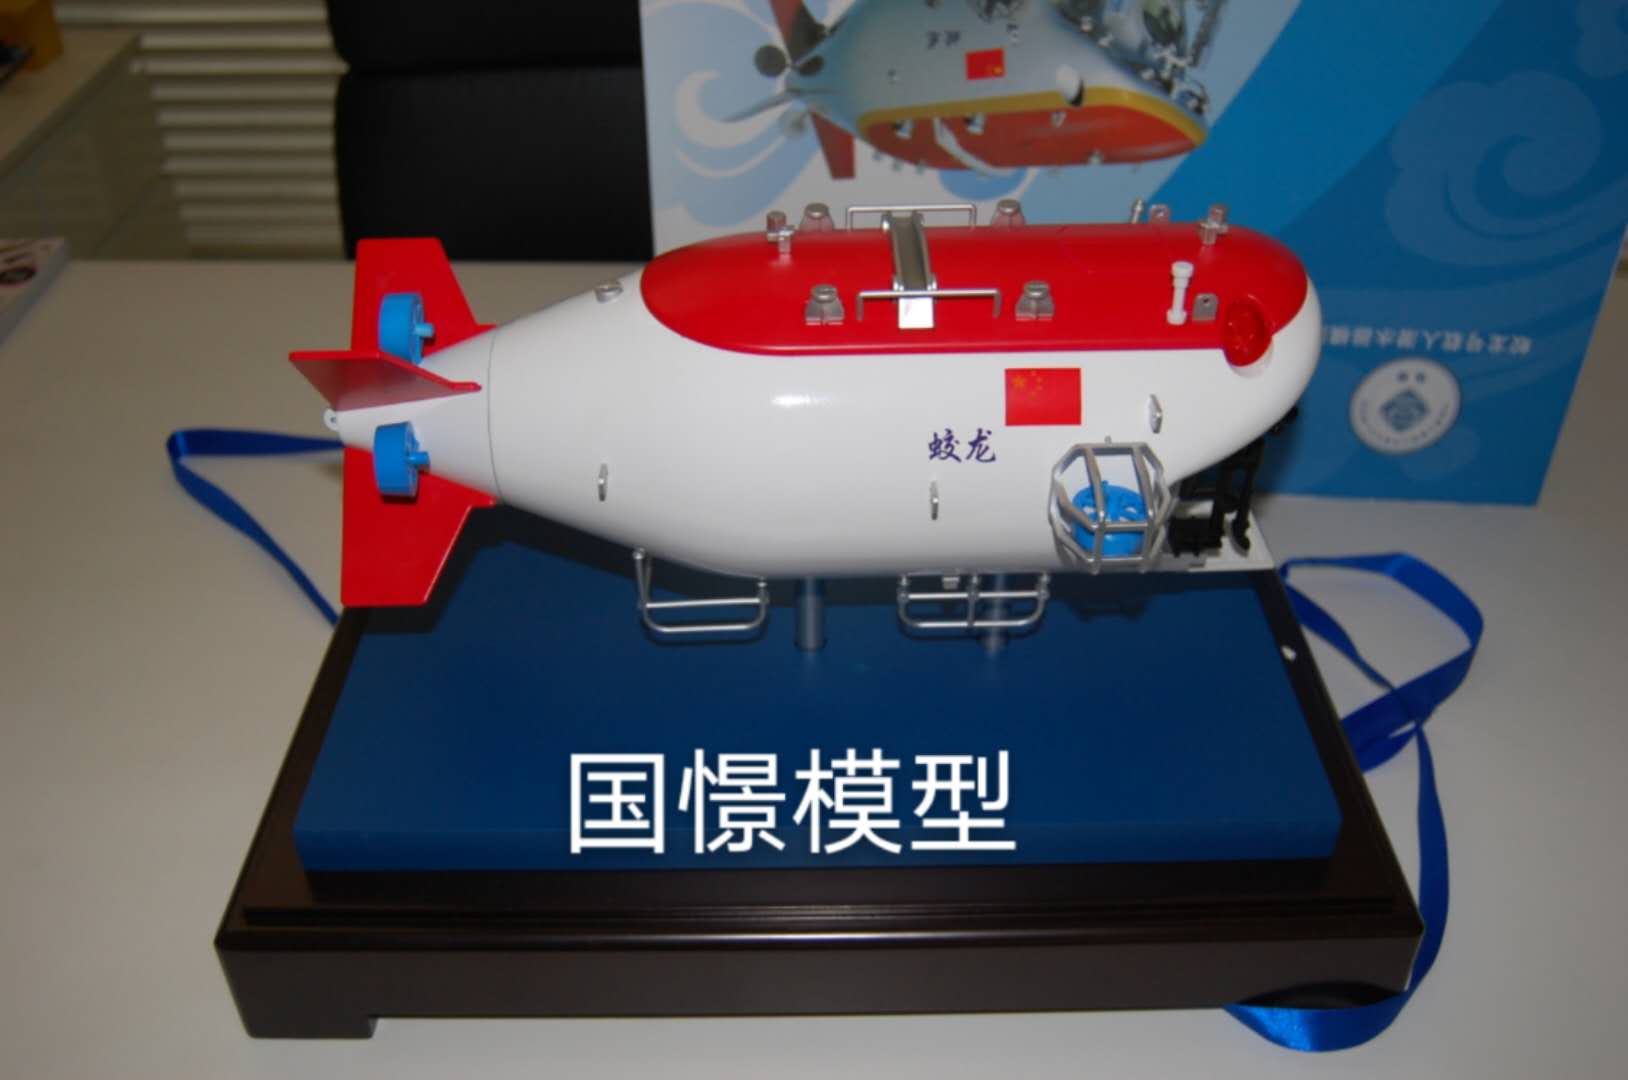 五寨县船舶模型